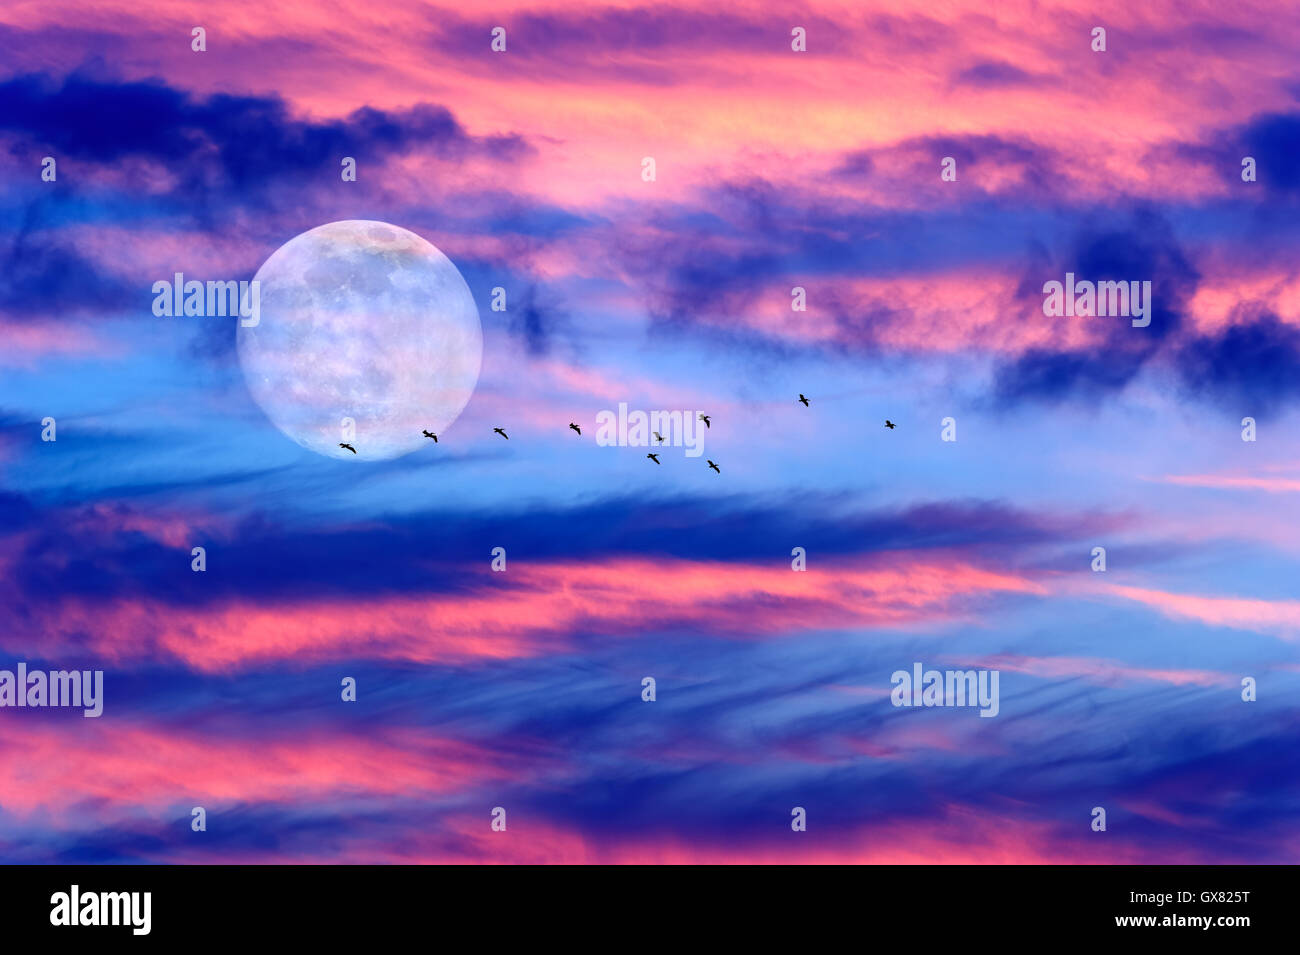 Lune oiseaux nuages cloudscape colorés est une ville dynamique avec des oiseaux qui volent par la lumière de la pleine lune se levant dans le ciel. Banque D'Images